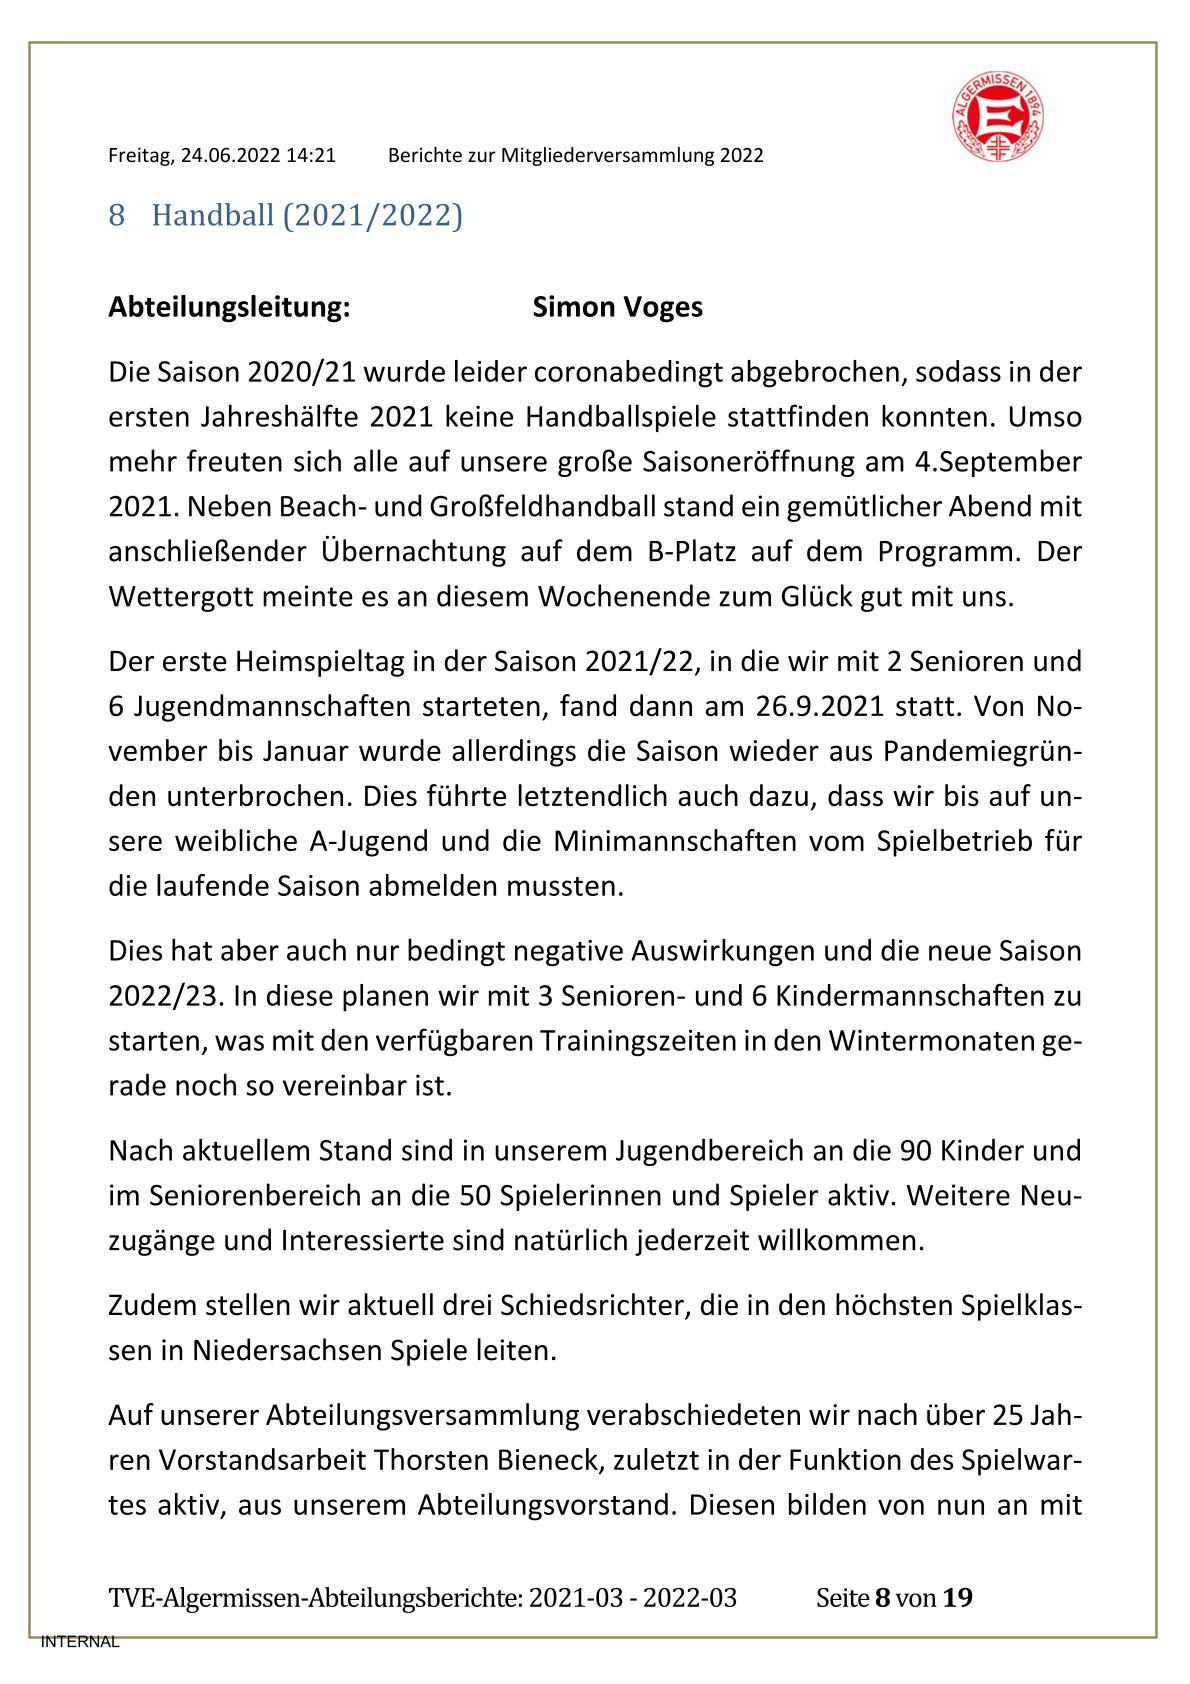 2022-06-24-abteilungsberichte-ungekuerzt-mgv-2022-08